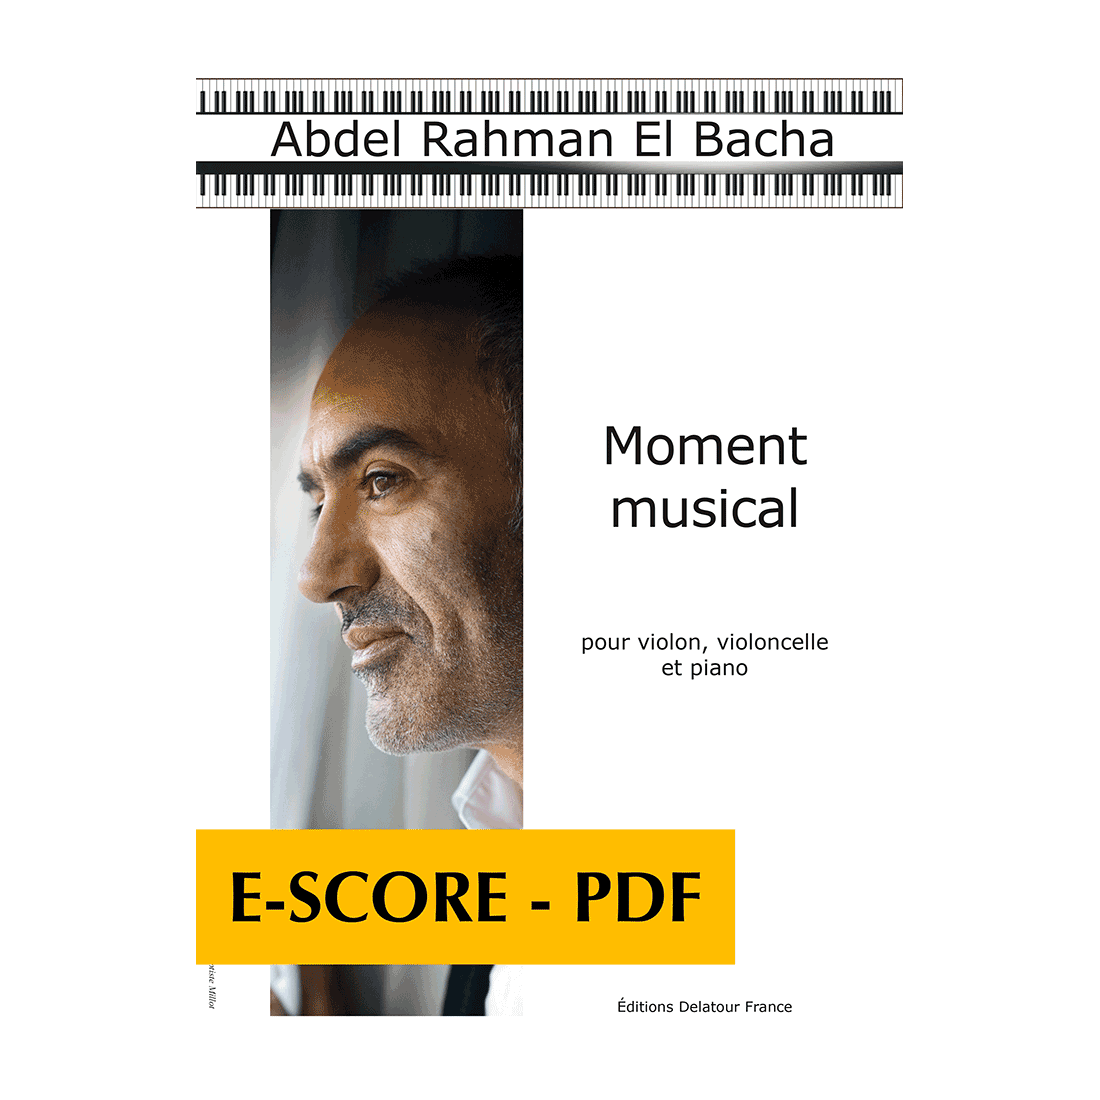 Moment musical für Violin, Violoncello und Klavier - E-score PDF